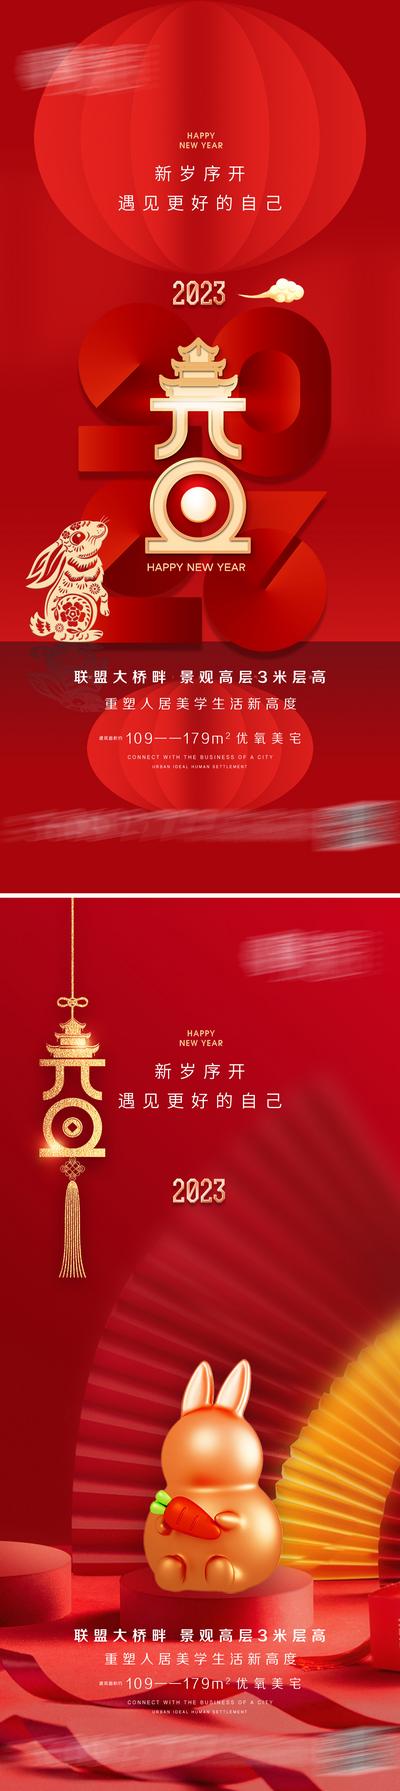 南门网 海报 地产 公历节日 元旦 兔年 灯笼 系列